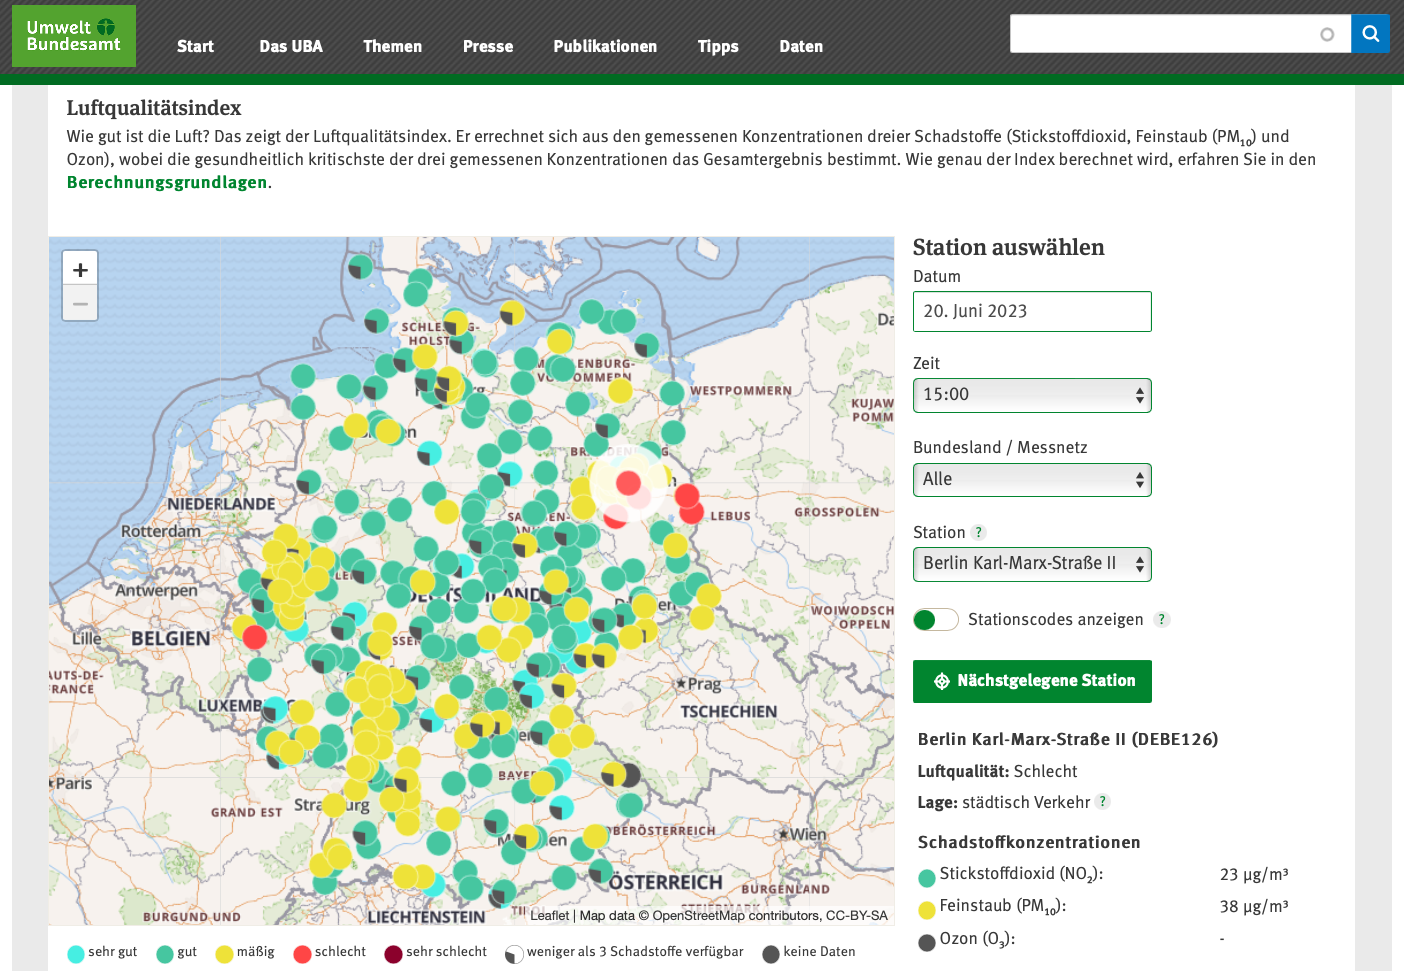 Diese interaktive Karte zeigt die vom Umweltbundesamt erfassten Luftgütemessstationen in Deutschland samt aktueller Messwerte. Mehrere Filter ermöglichen, die Anzeige der Messwerte nach Datum, Uhrzeit, Bundesland oder Station einzugrenzen.